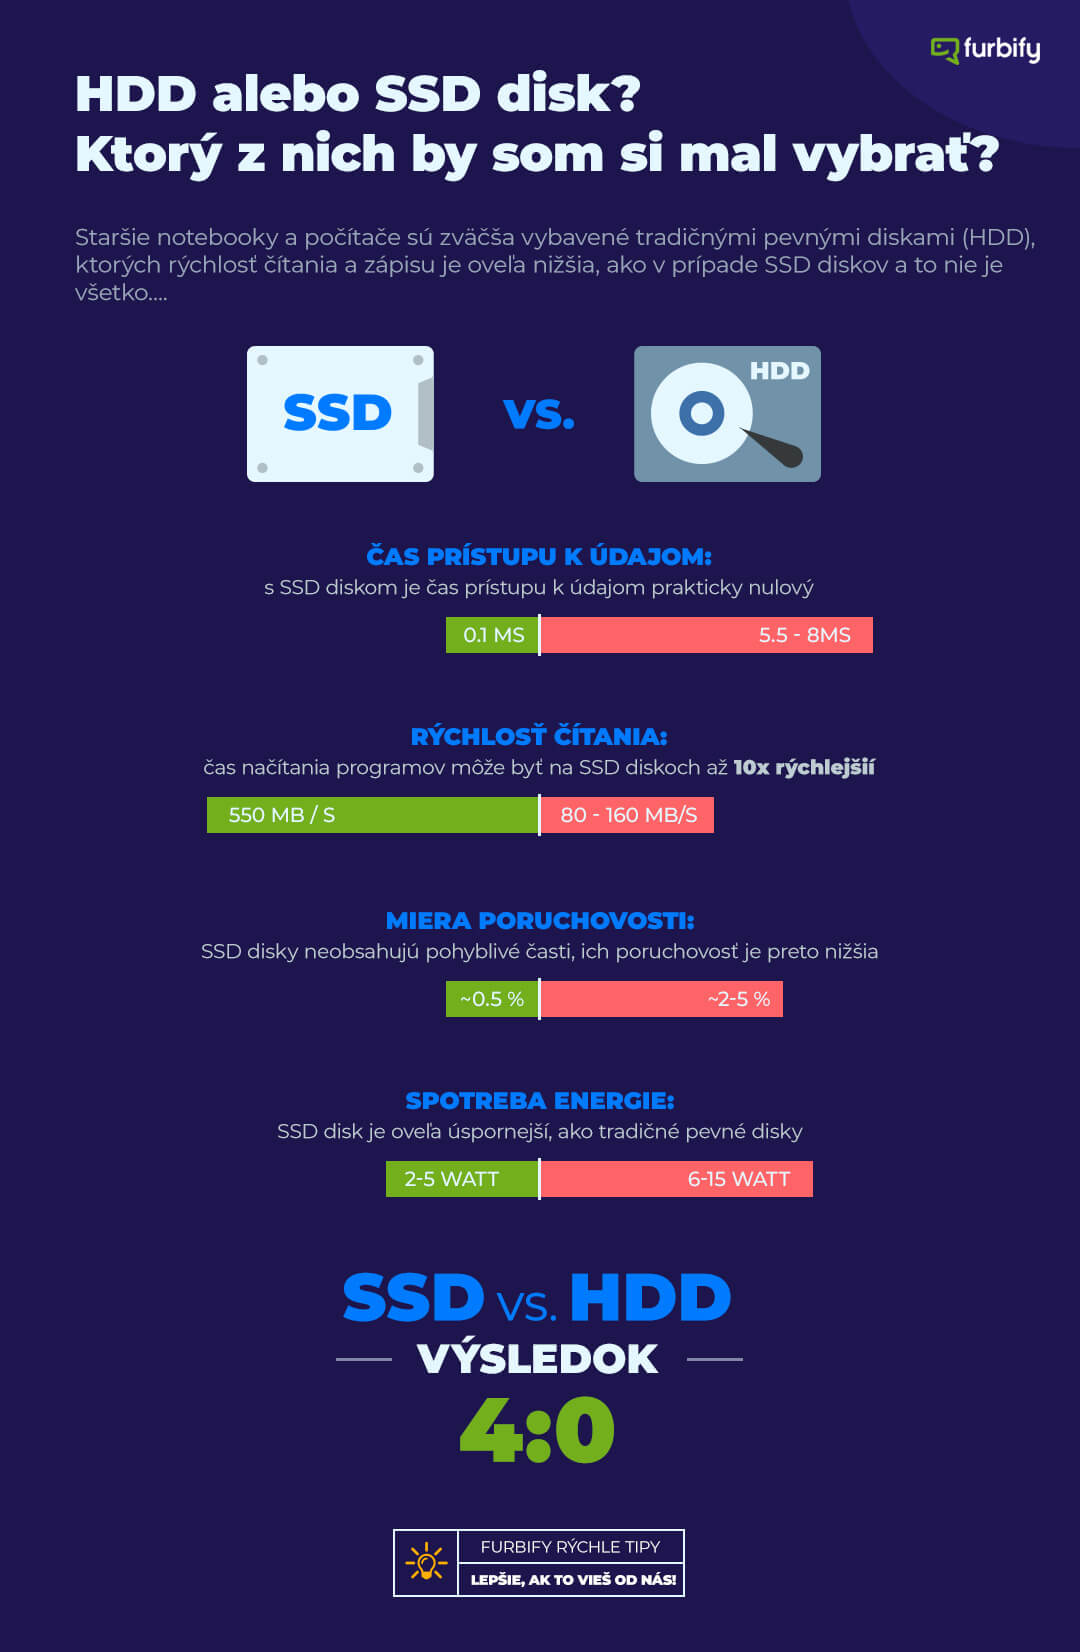 Infografika od furbify HDD alebo SSD disk